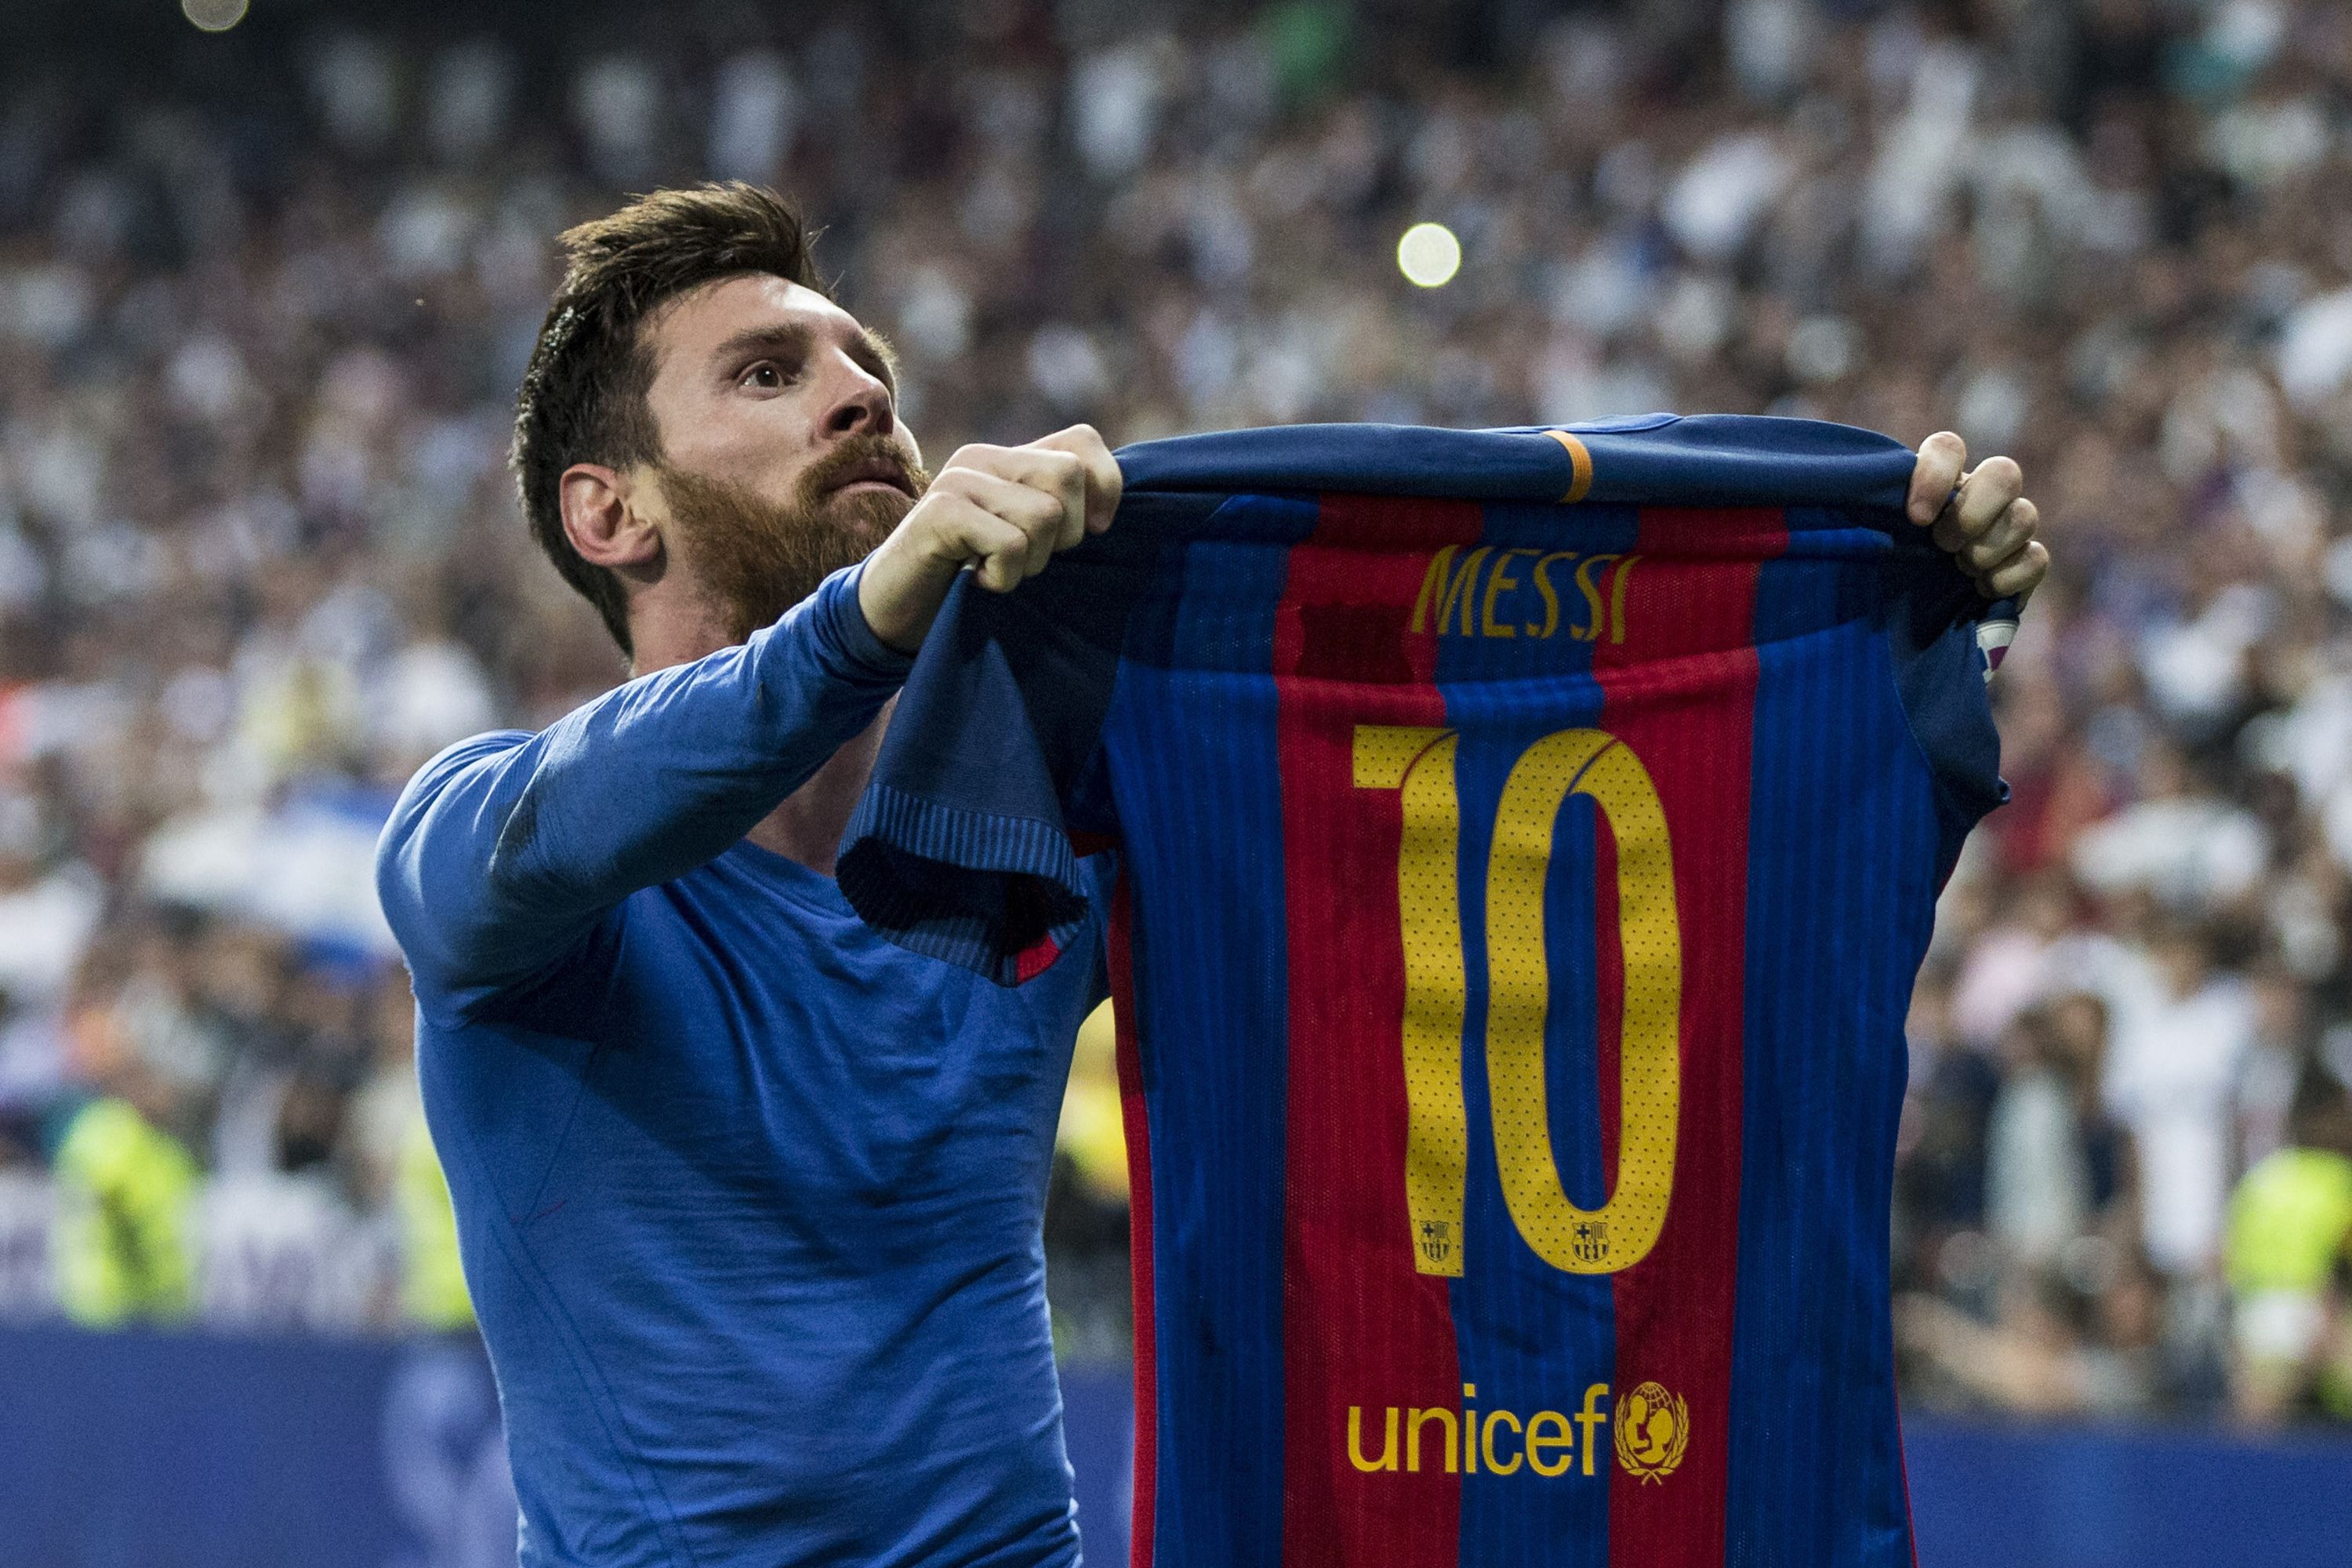 Hình nền Áo của Messi là biểu tượng của sự thành công và niềm đam mê cho bóng đá. Hãy cùng chiêm ngưỡng bức ảnh độc đáo này và tìm hiểu thêm về vị huyền thoại Messi.